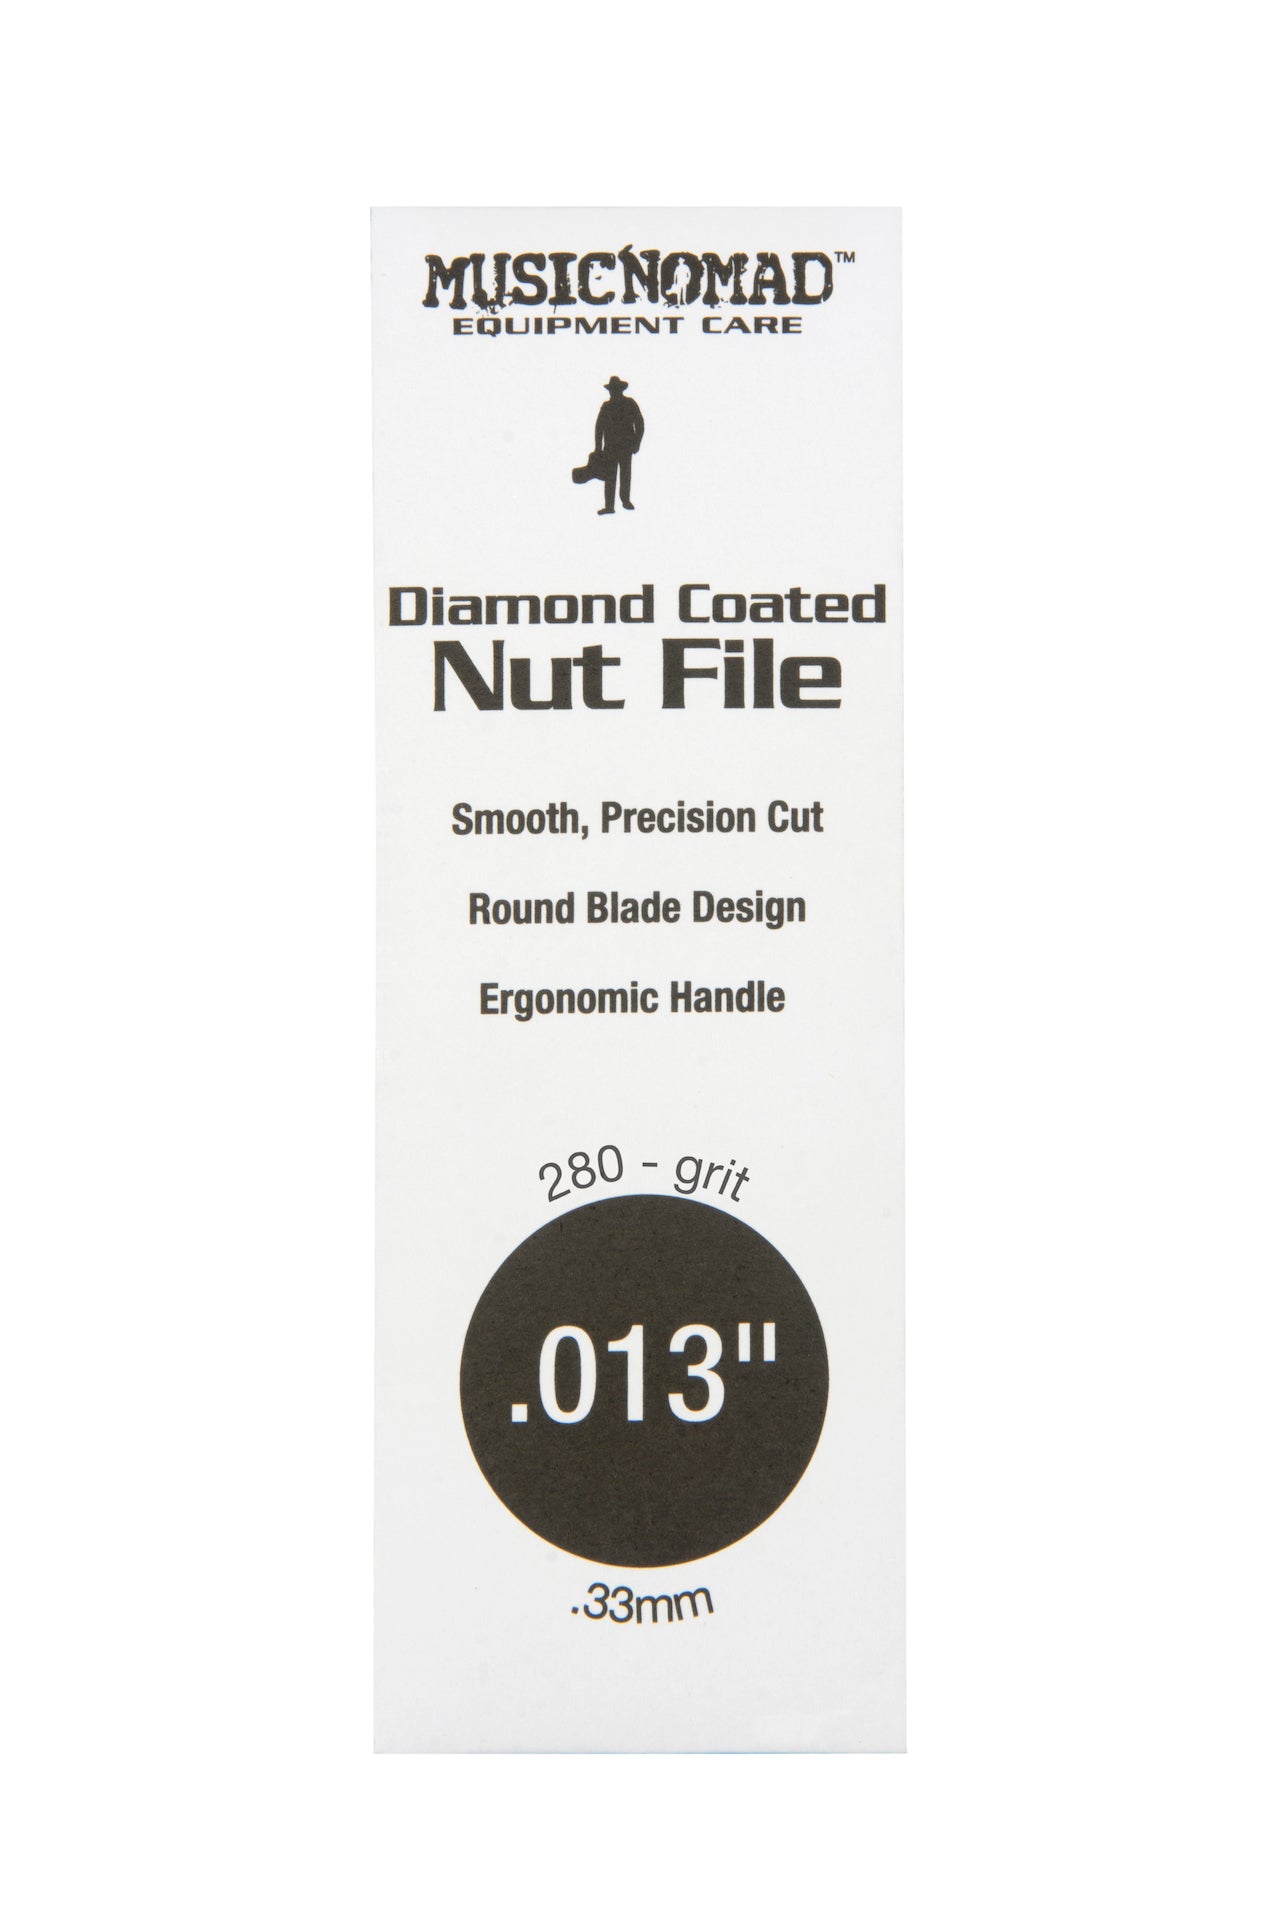 Music Nomad Diamond Coated Nut File Singles - HIENDGUITAR .013" .013" musicnomad musicnomad